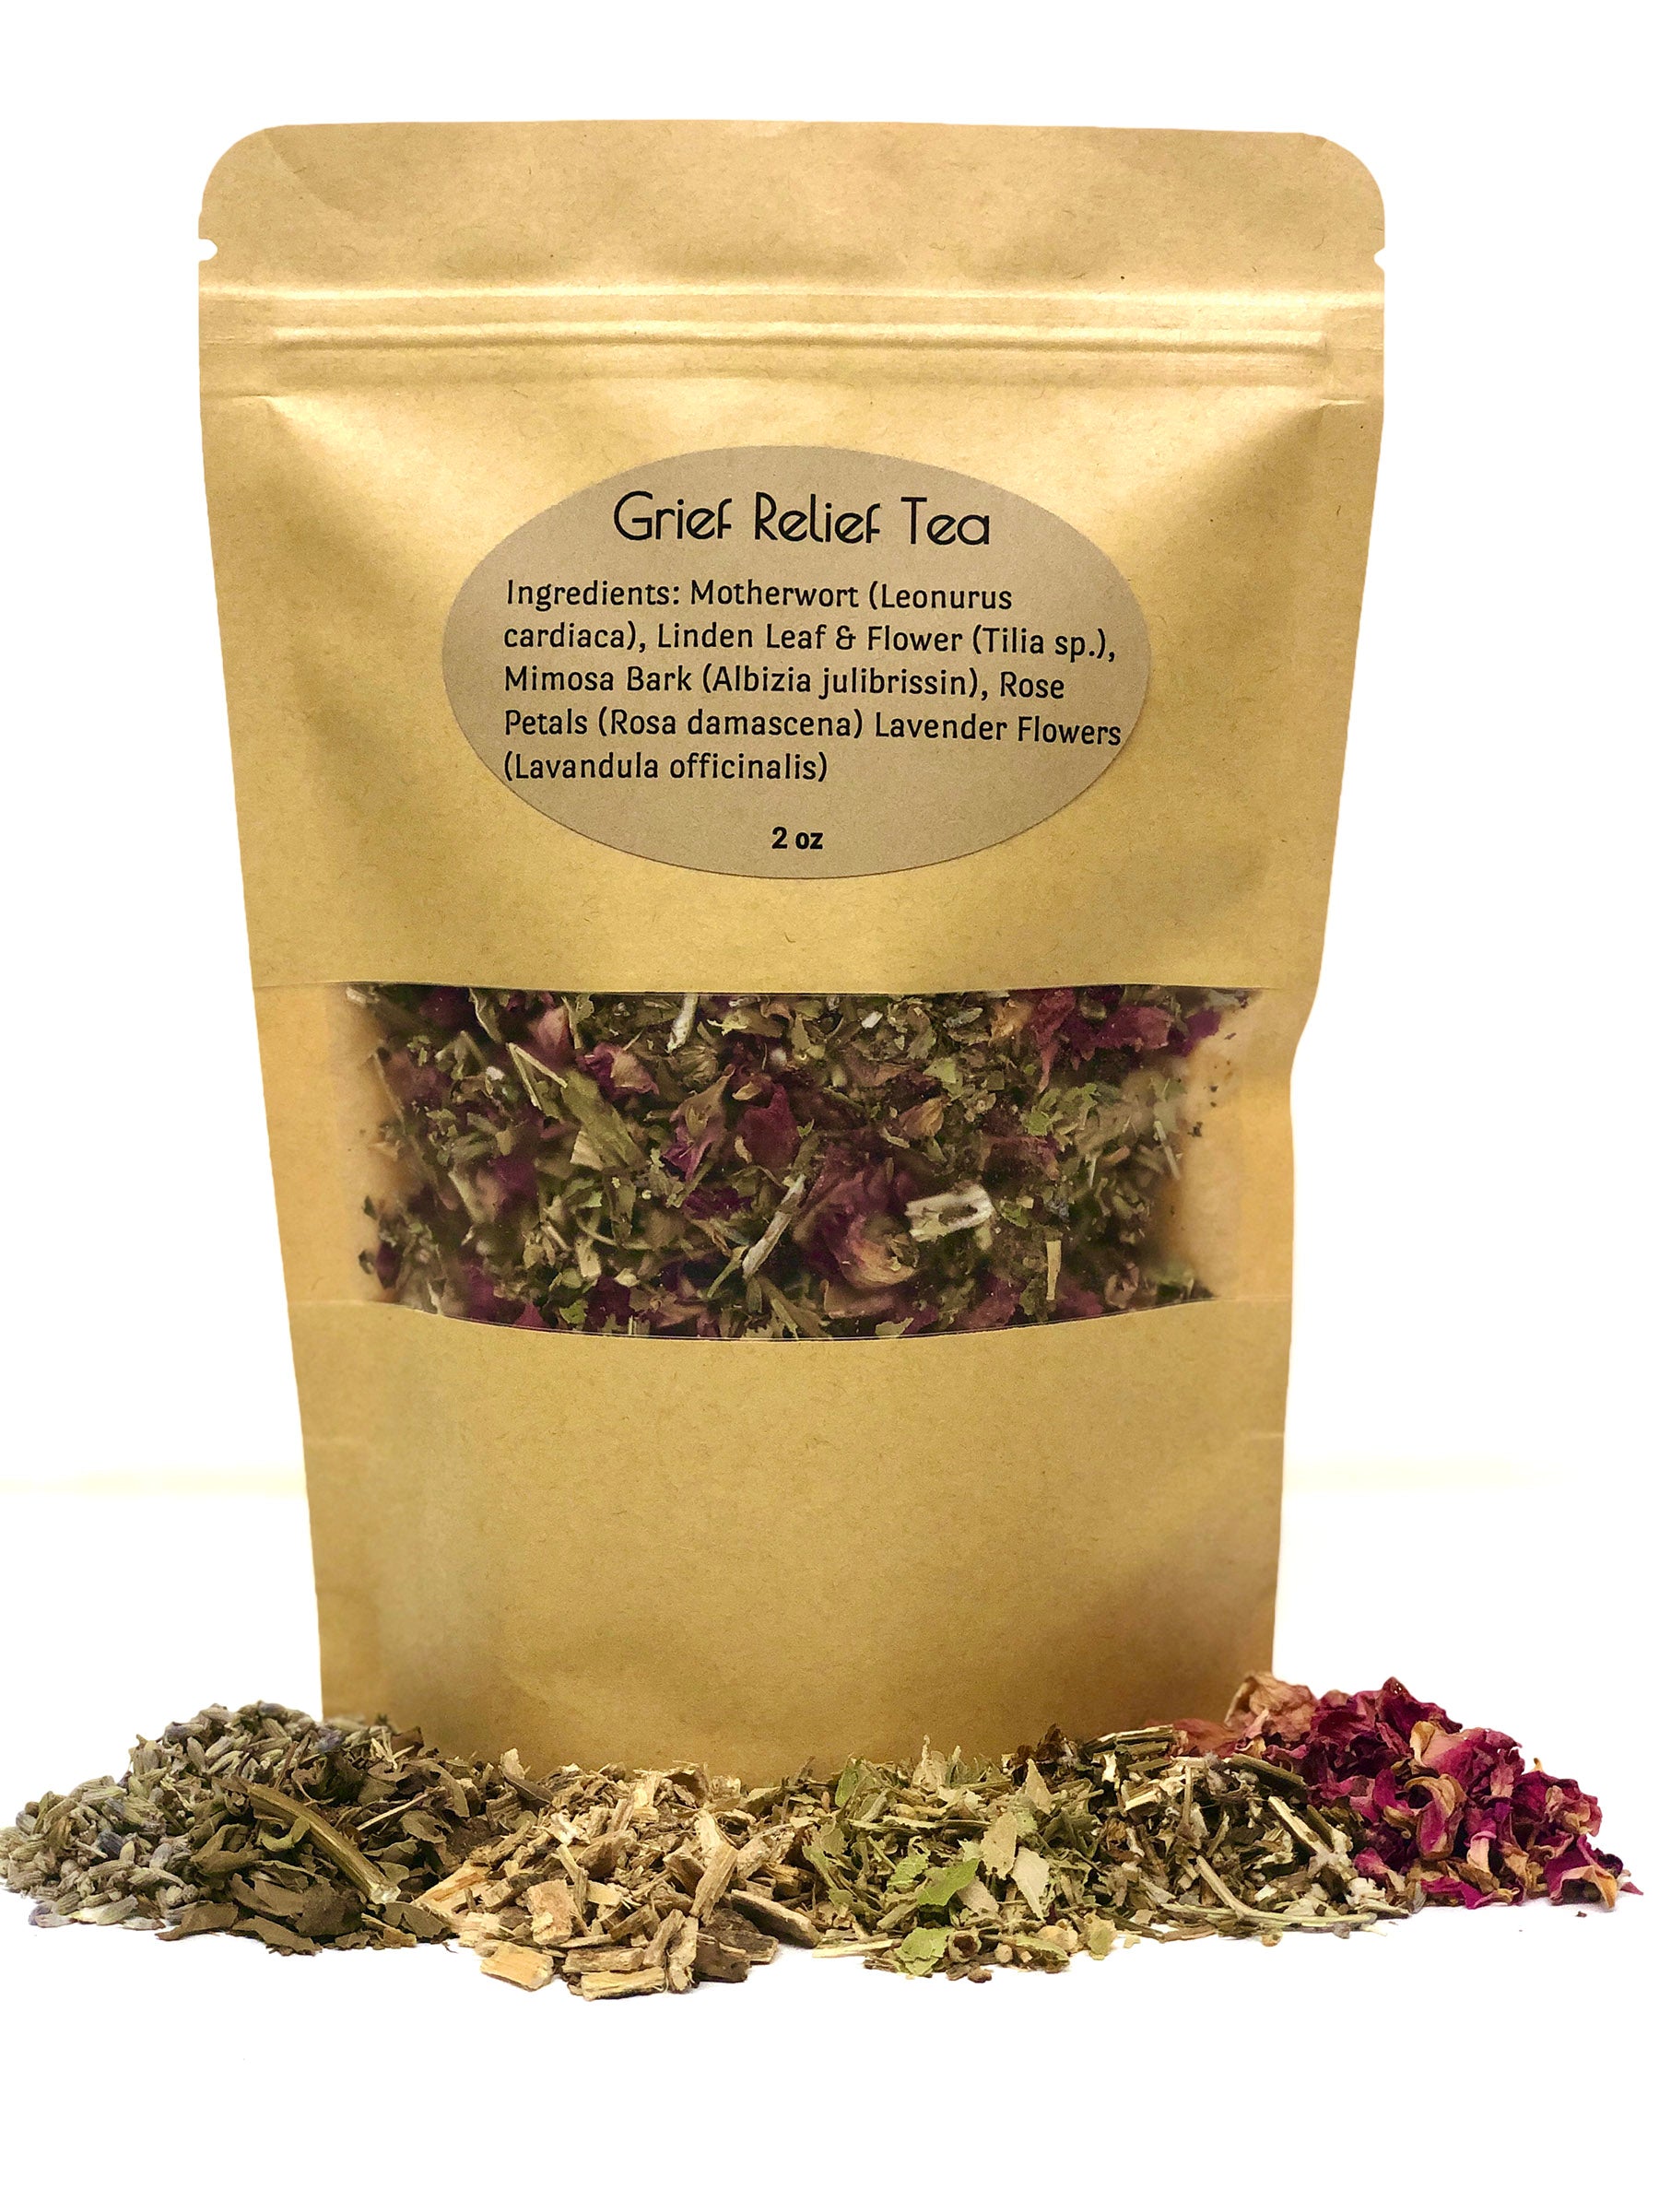 Grief Relief Tea Tea The Herbologist Shop 